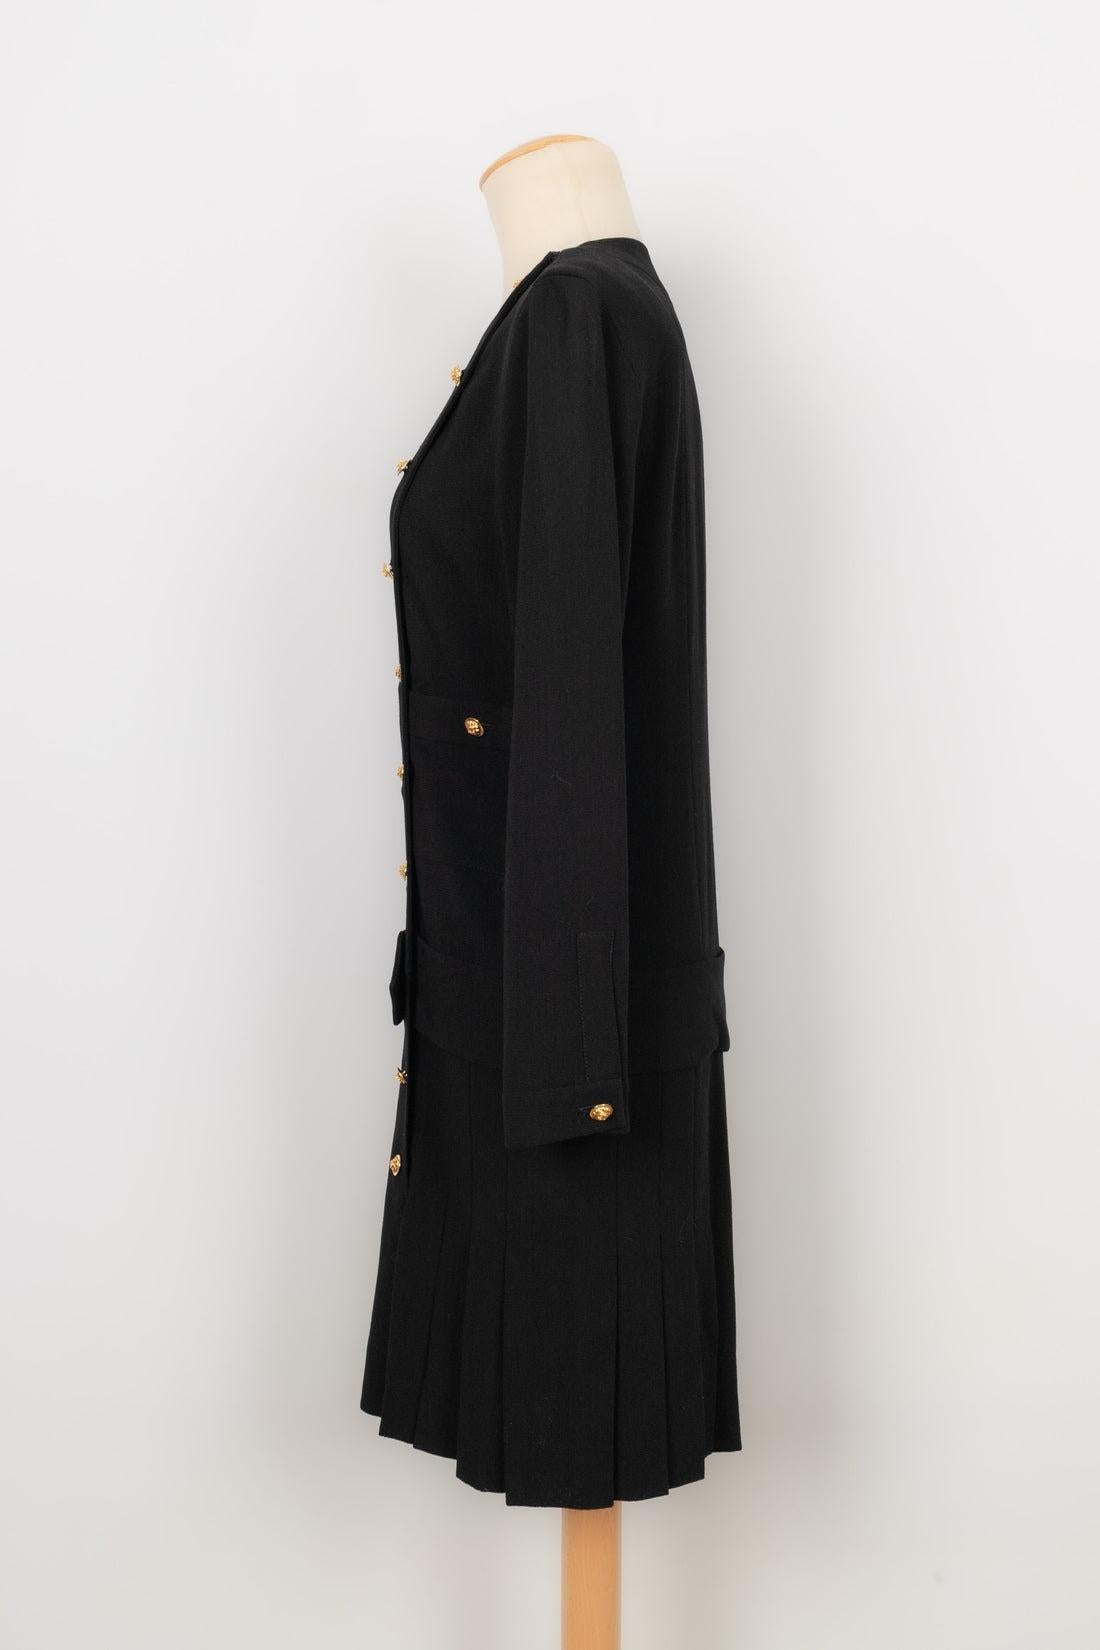 Chanel - Langärmeliges, schwarzes Kleid mit goldenen Metallknöpfen verziert. Keine Größenangabe, es passt eine 38FR. Stück aus dem Ende der 1980er Jahre.

Zusätzliche Informationen:
Zustand: Sehr guter Zustand
Abmessungen: Schulterbreite: 39 cm -